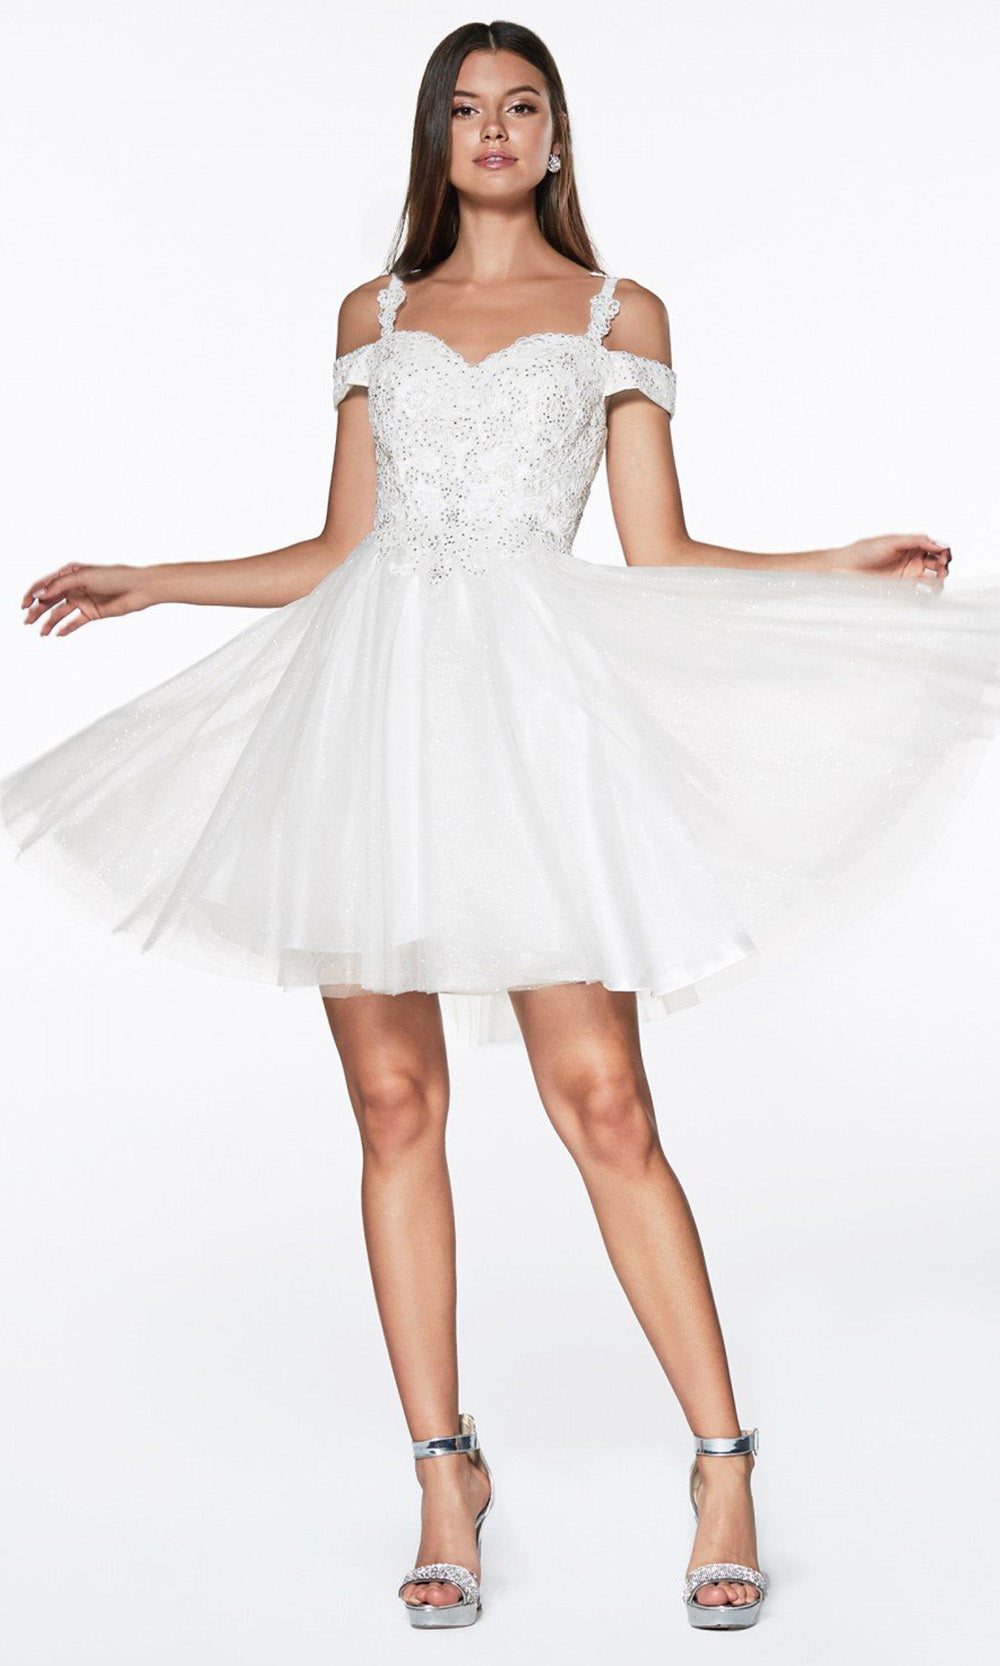 Ladivine - CD0132 Glitter Tulle A-Line Dress In White & Ivorygrade 8 grad dresses, graduation dresses